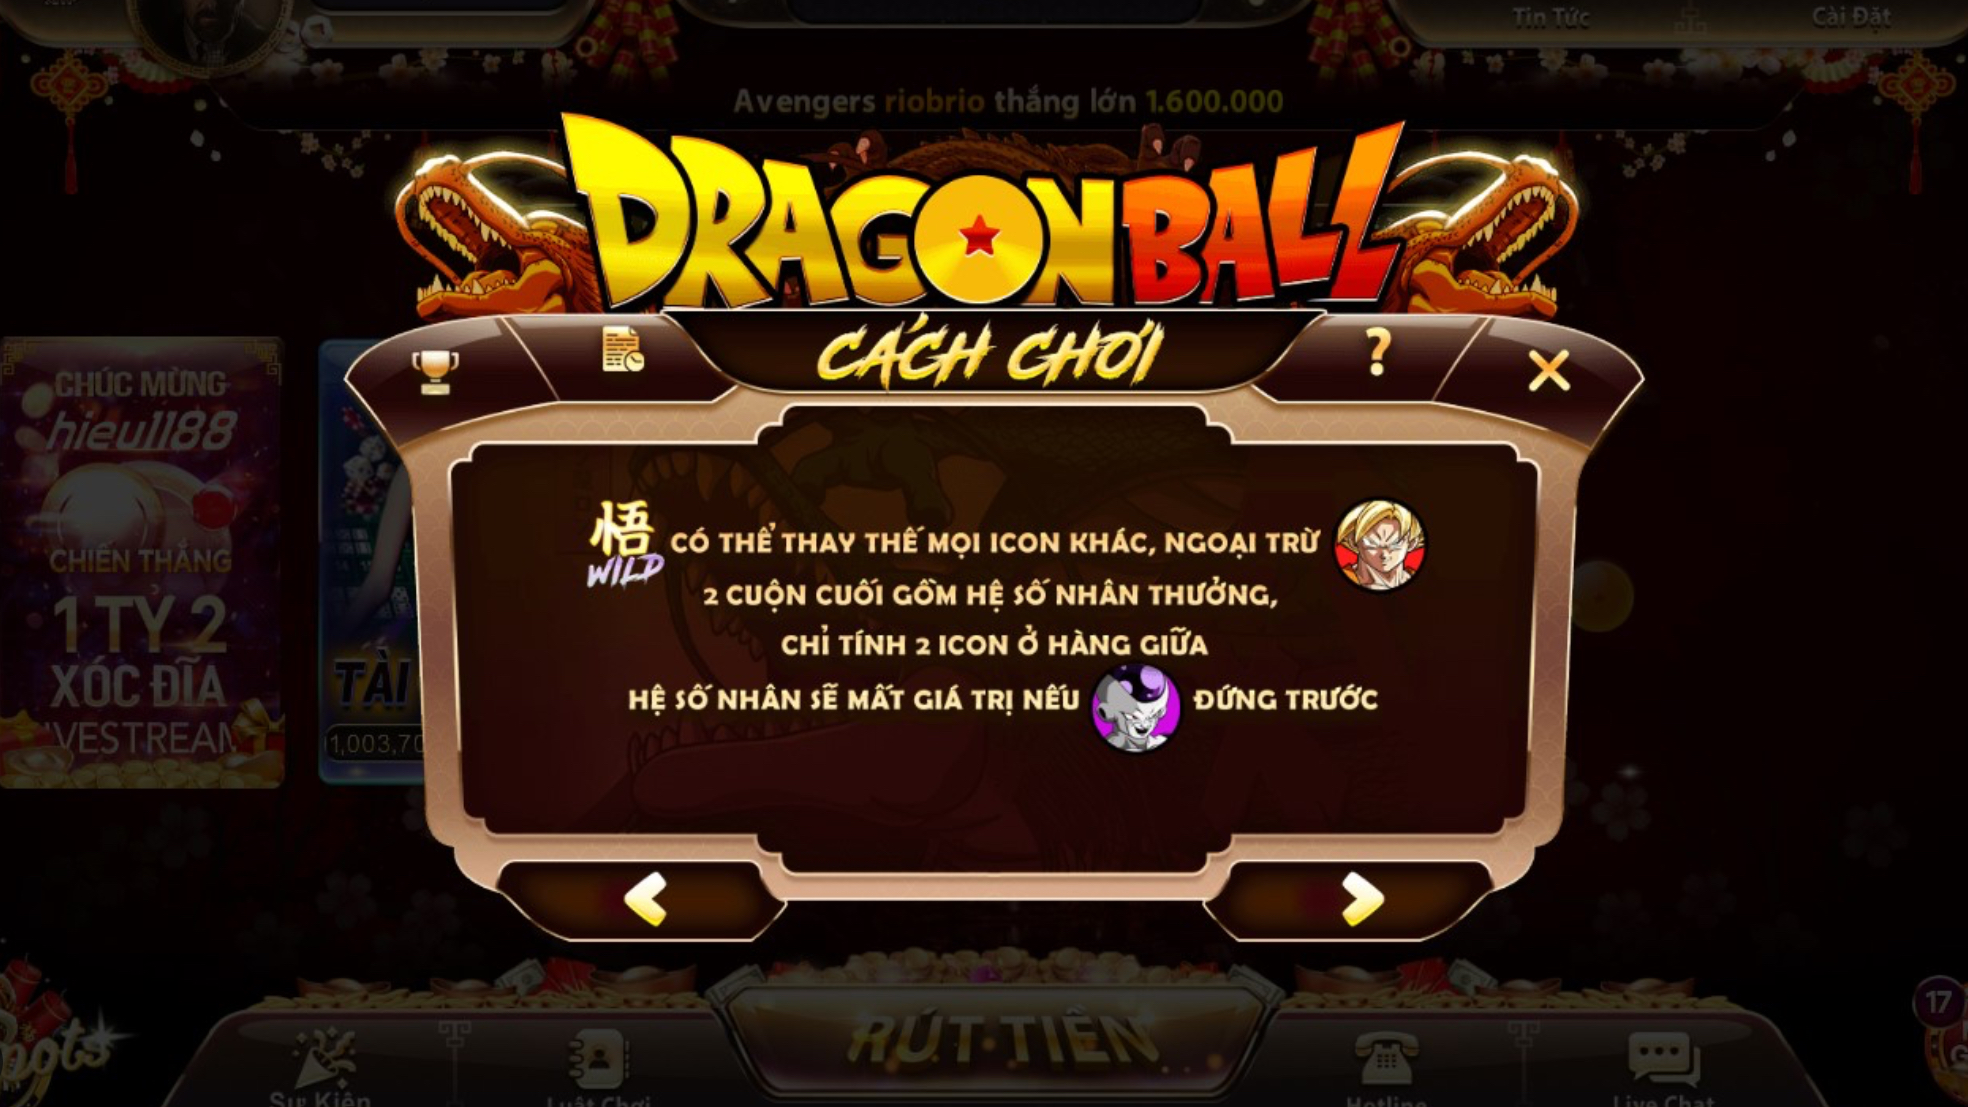 Tìm hiểu luật chơi Dragon ball nhatvip 